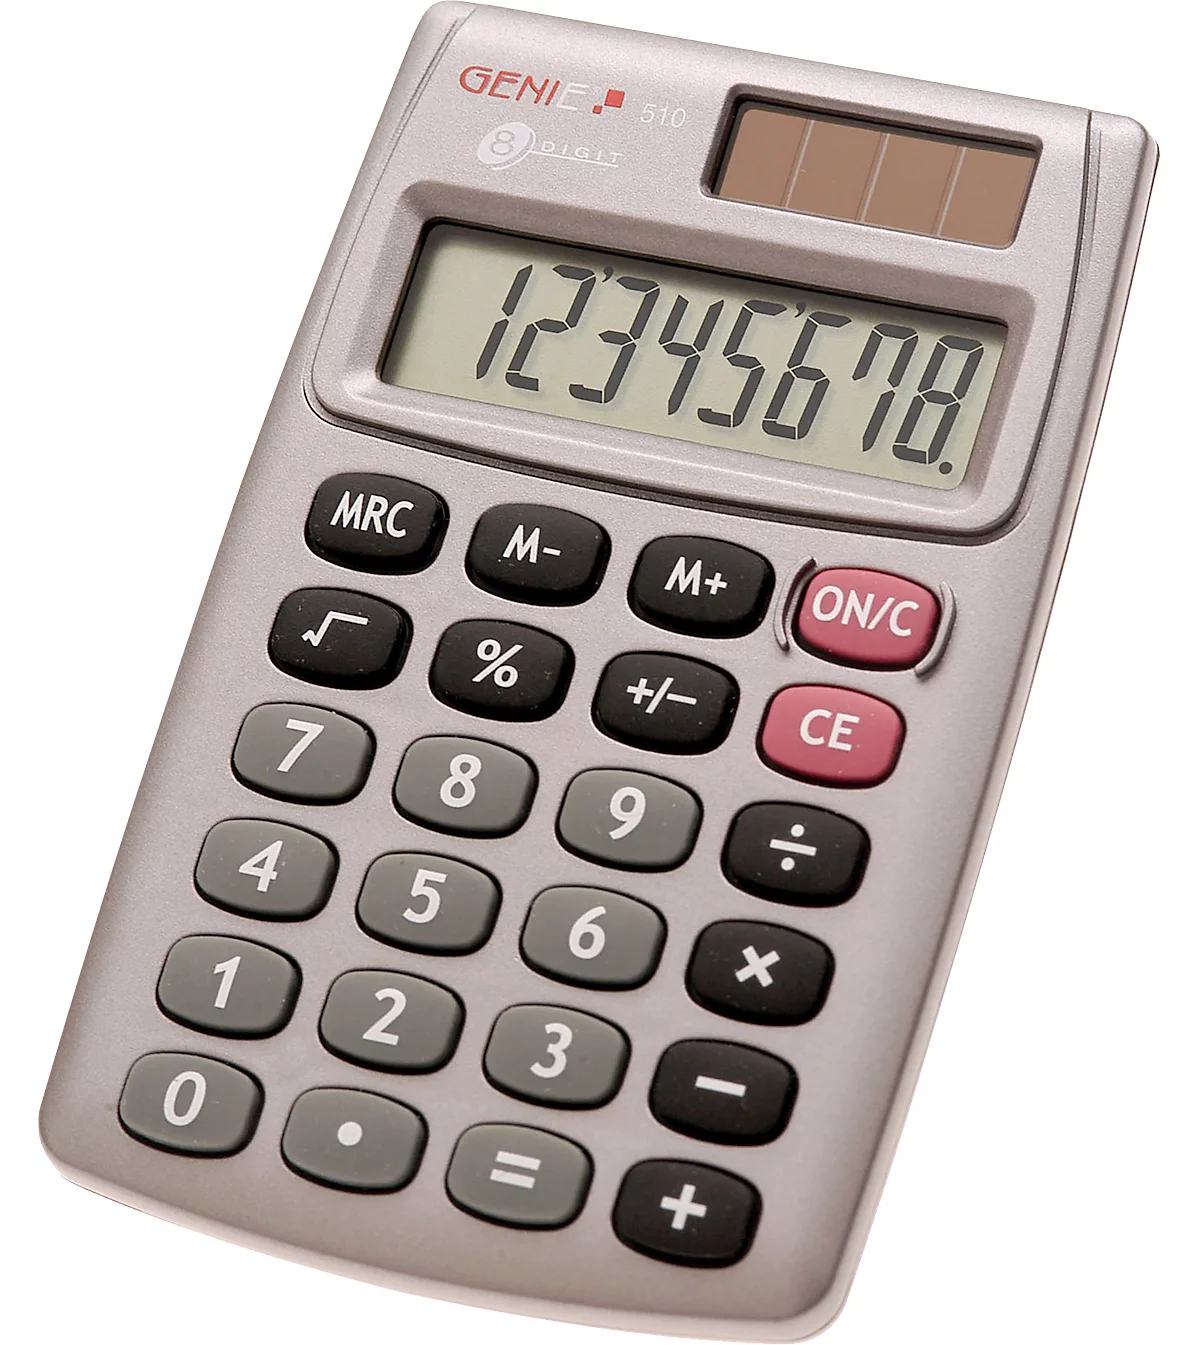 Calculadora de bolsillo Genie 510, con pantalla de 8 dígitos, alimentado con batería y solar